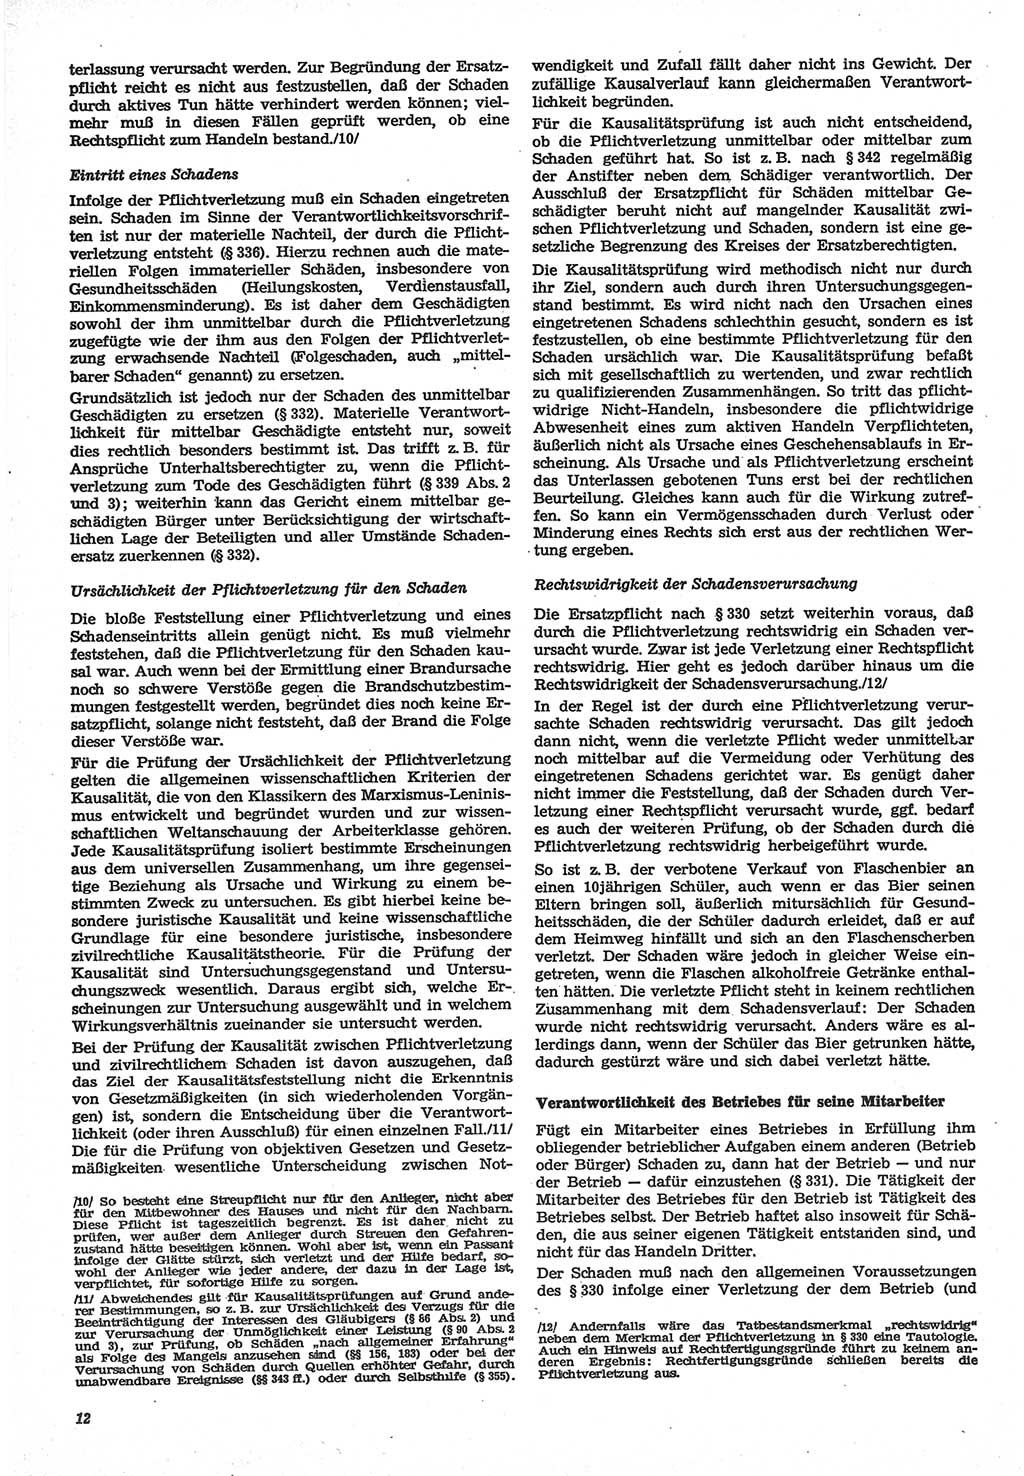 Neue Justiz (NJ), Zeitschrift für Recht und Rechtswissenschaft-Zeitschrift, sozialistisches Recht und Gesetzlichkeit, 31. Jahrgang 1977, Seite 12 (NJ DDR 1977, S. 12)